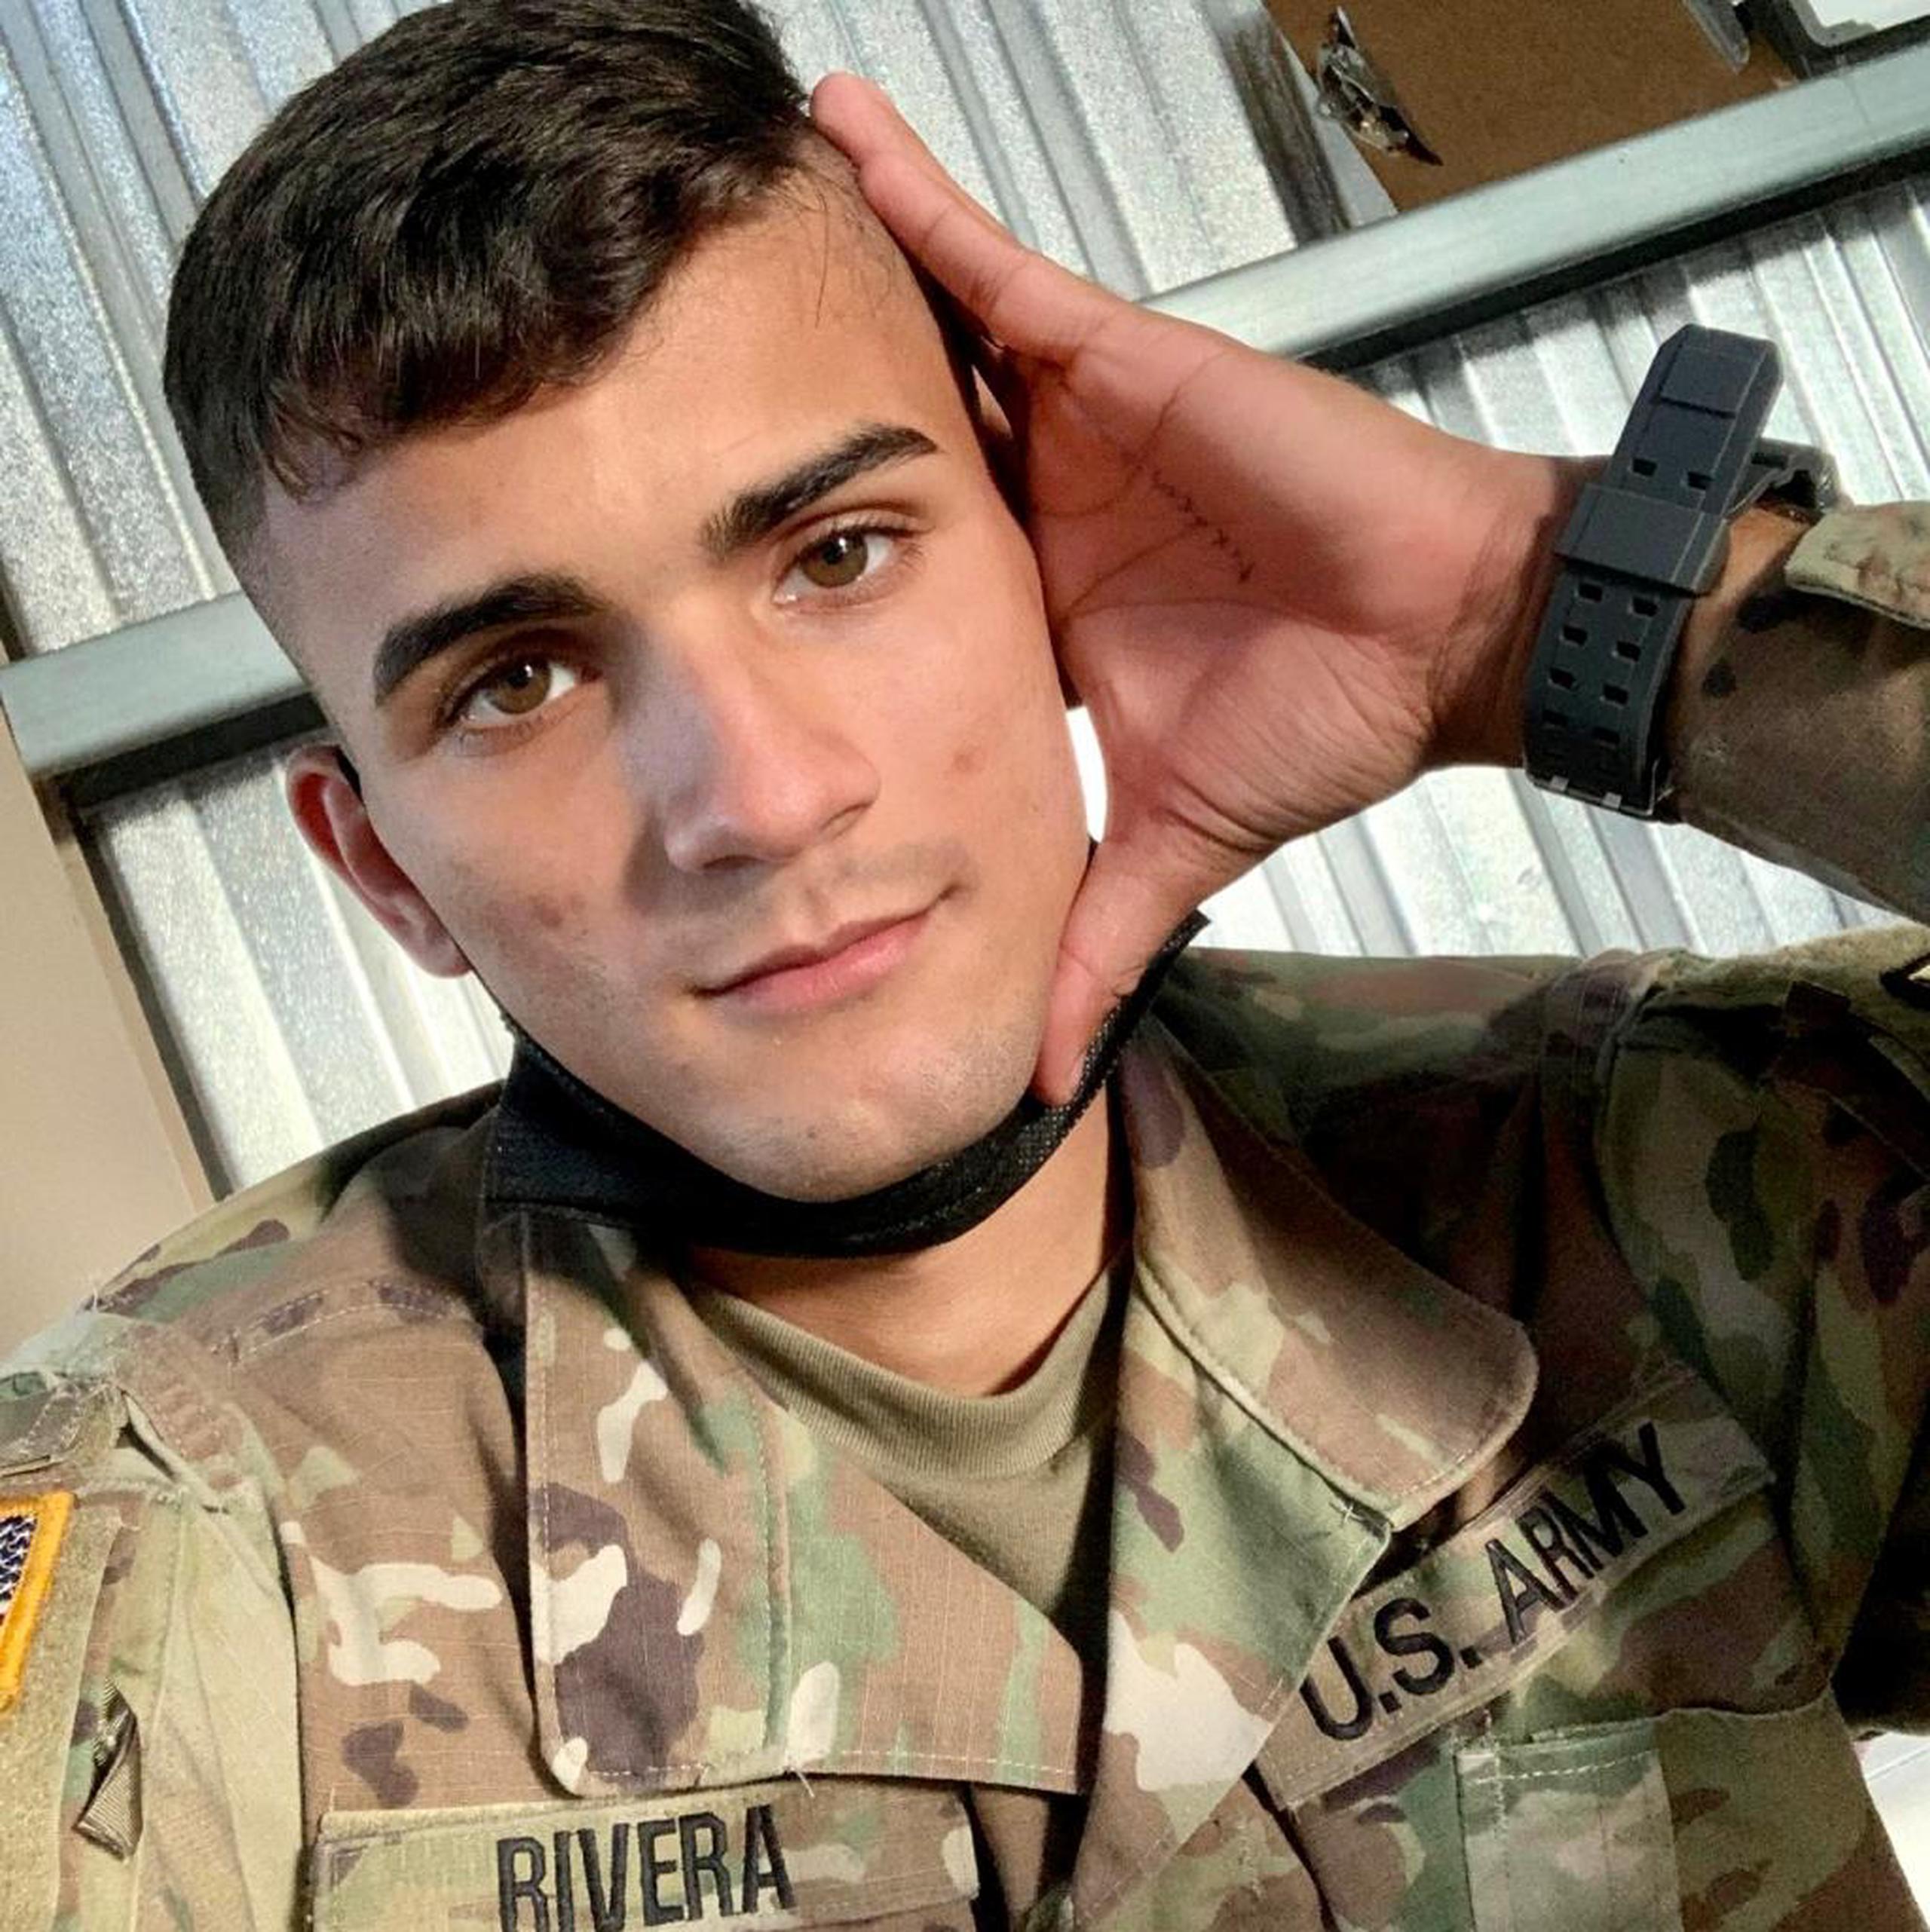 El teniente de la Reserva del Ejército Jeancarlo Rivera Lugo de 23 años, fue asesinado en el barrio El Tuque en Ponce durante un altercado de tránsito.